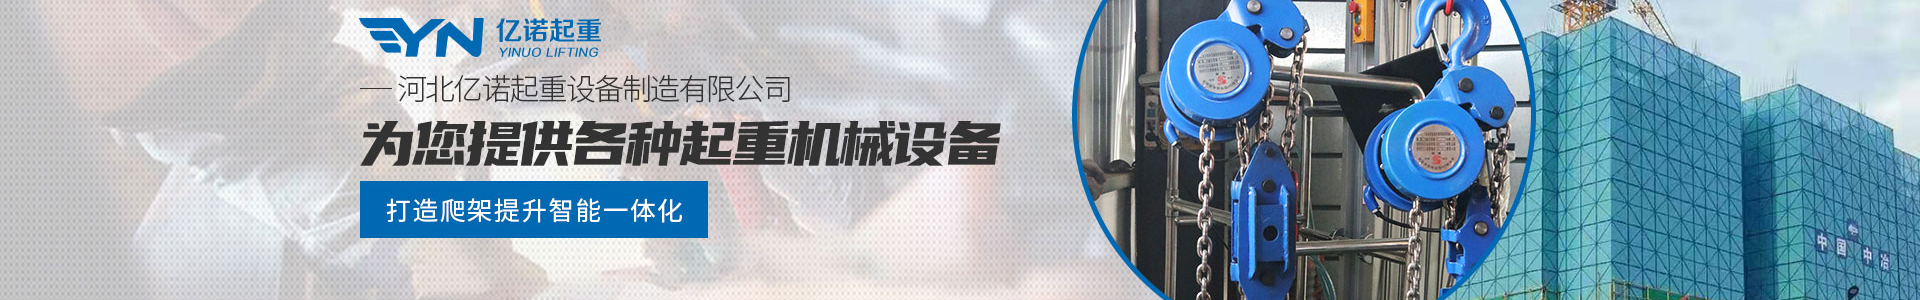 DH型倒挂环链电动葫芦_产品展示_亿诺起重有限公司